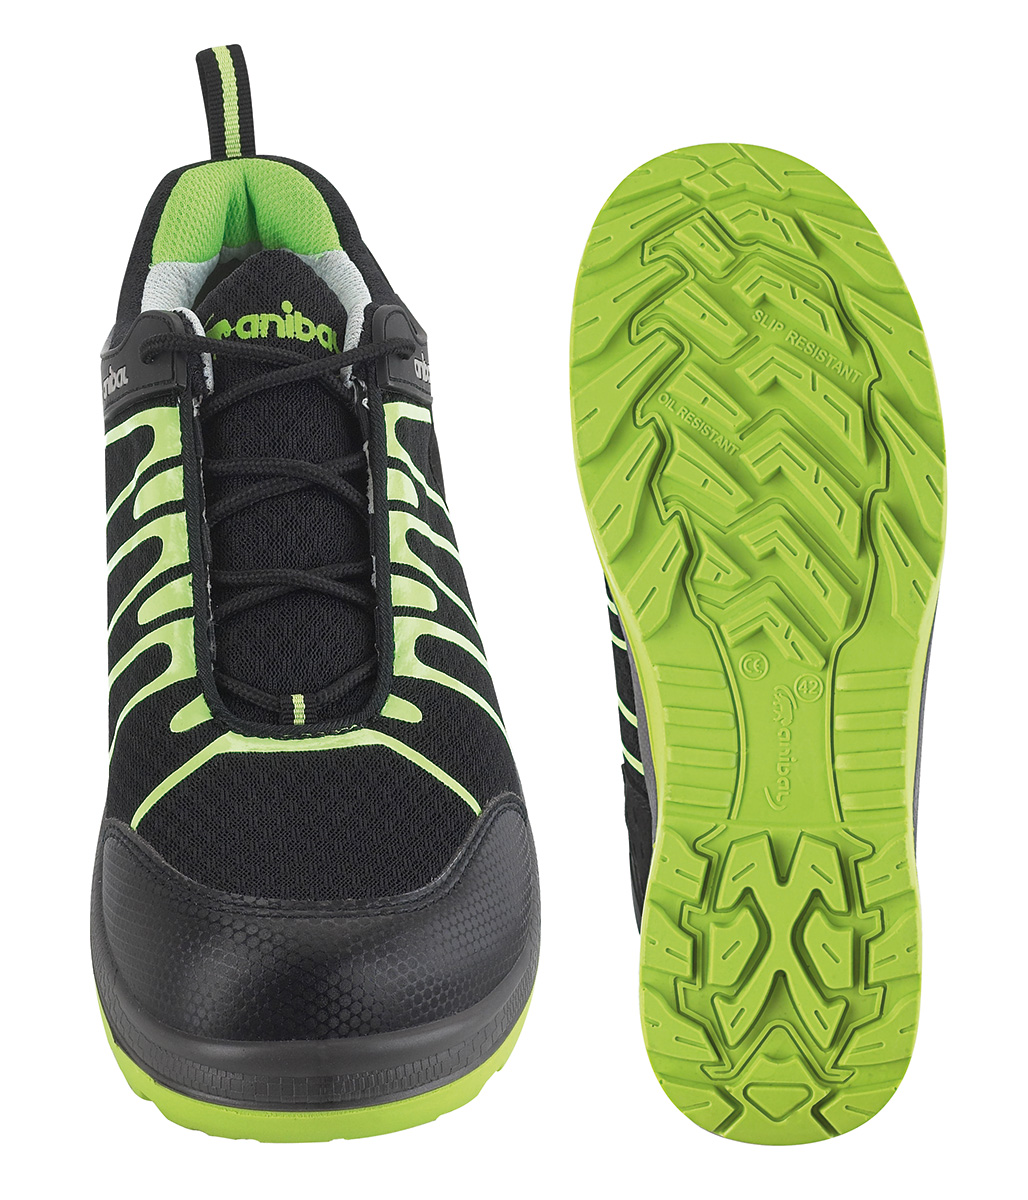 1688-ZUF PRO Calzado de Seguridad Light Evolution  Zapato mod. 